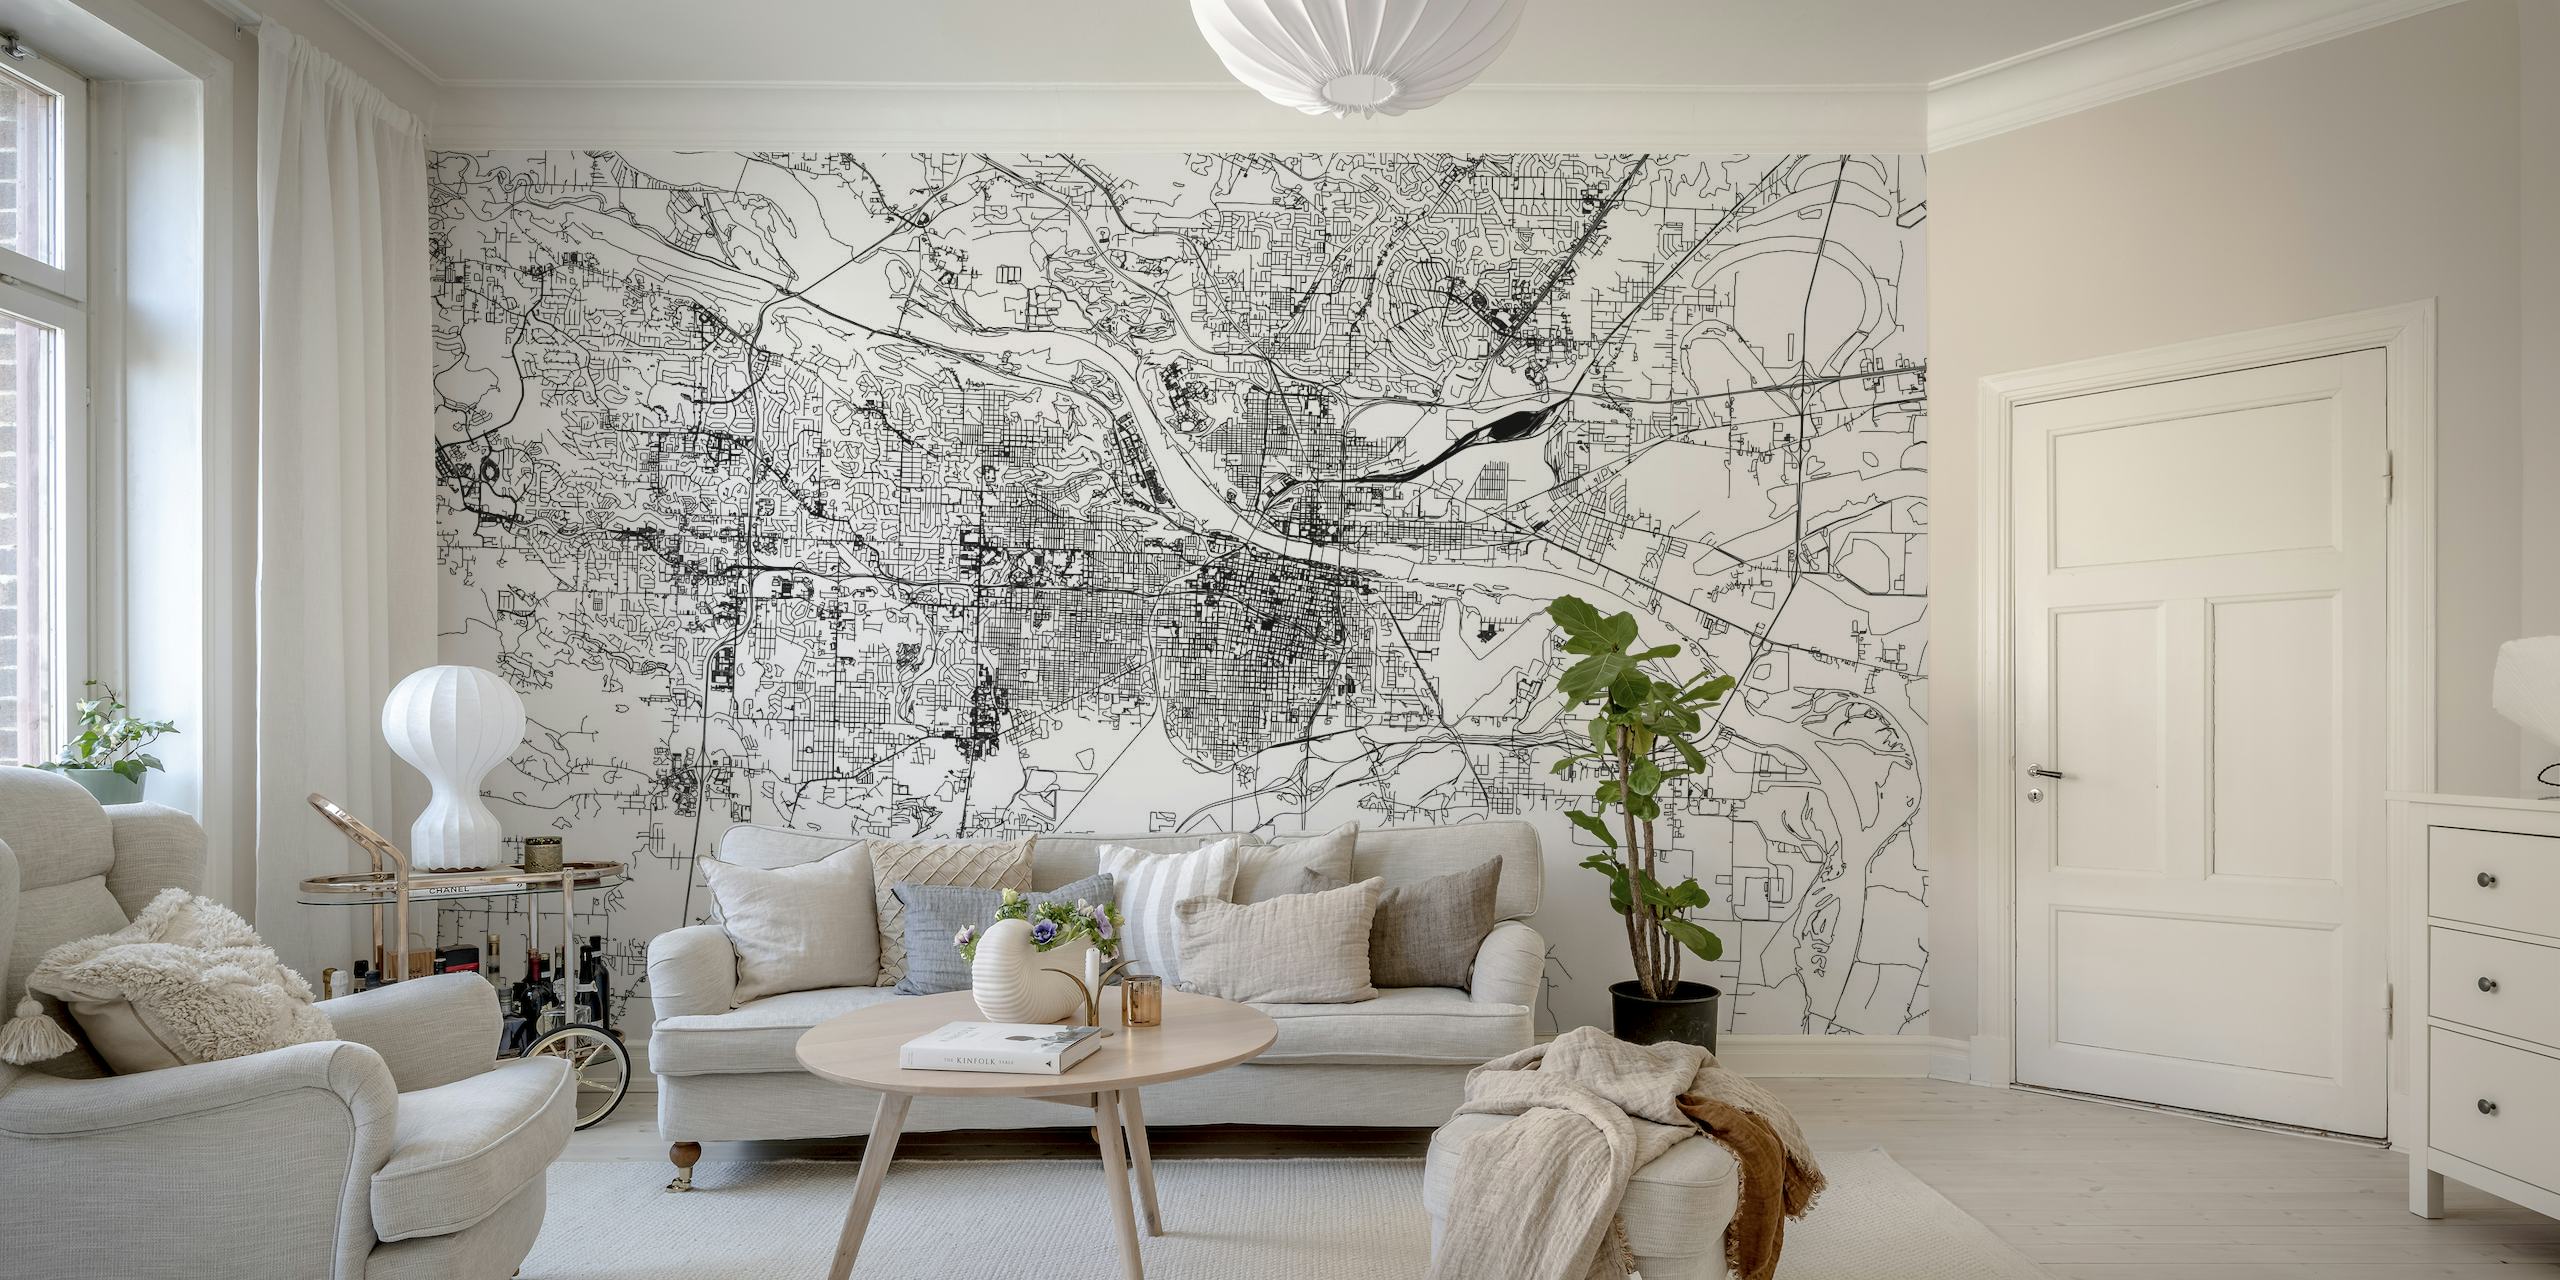 Monokrom vægmaleri af Little Rock Map med detaljeret gadelayout